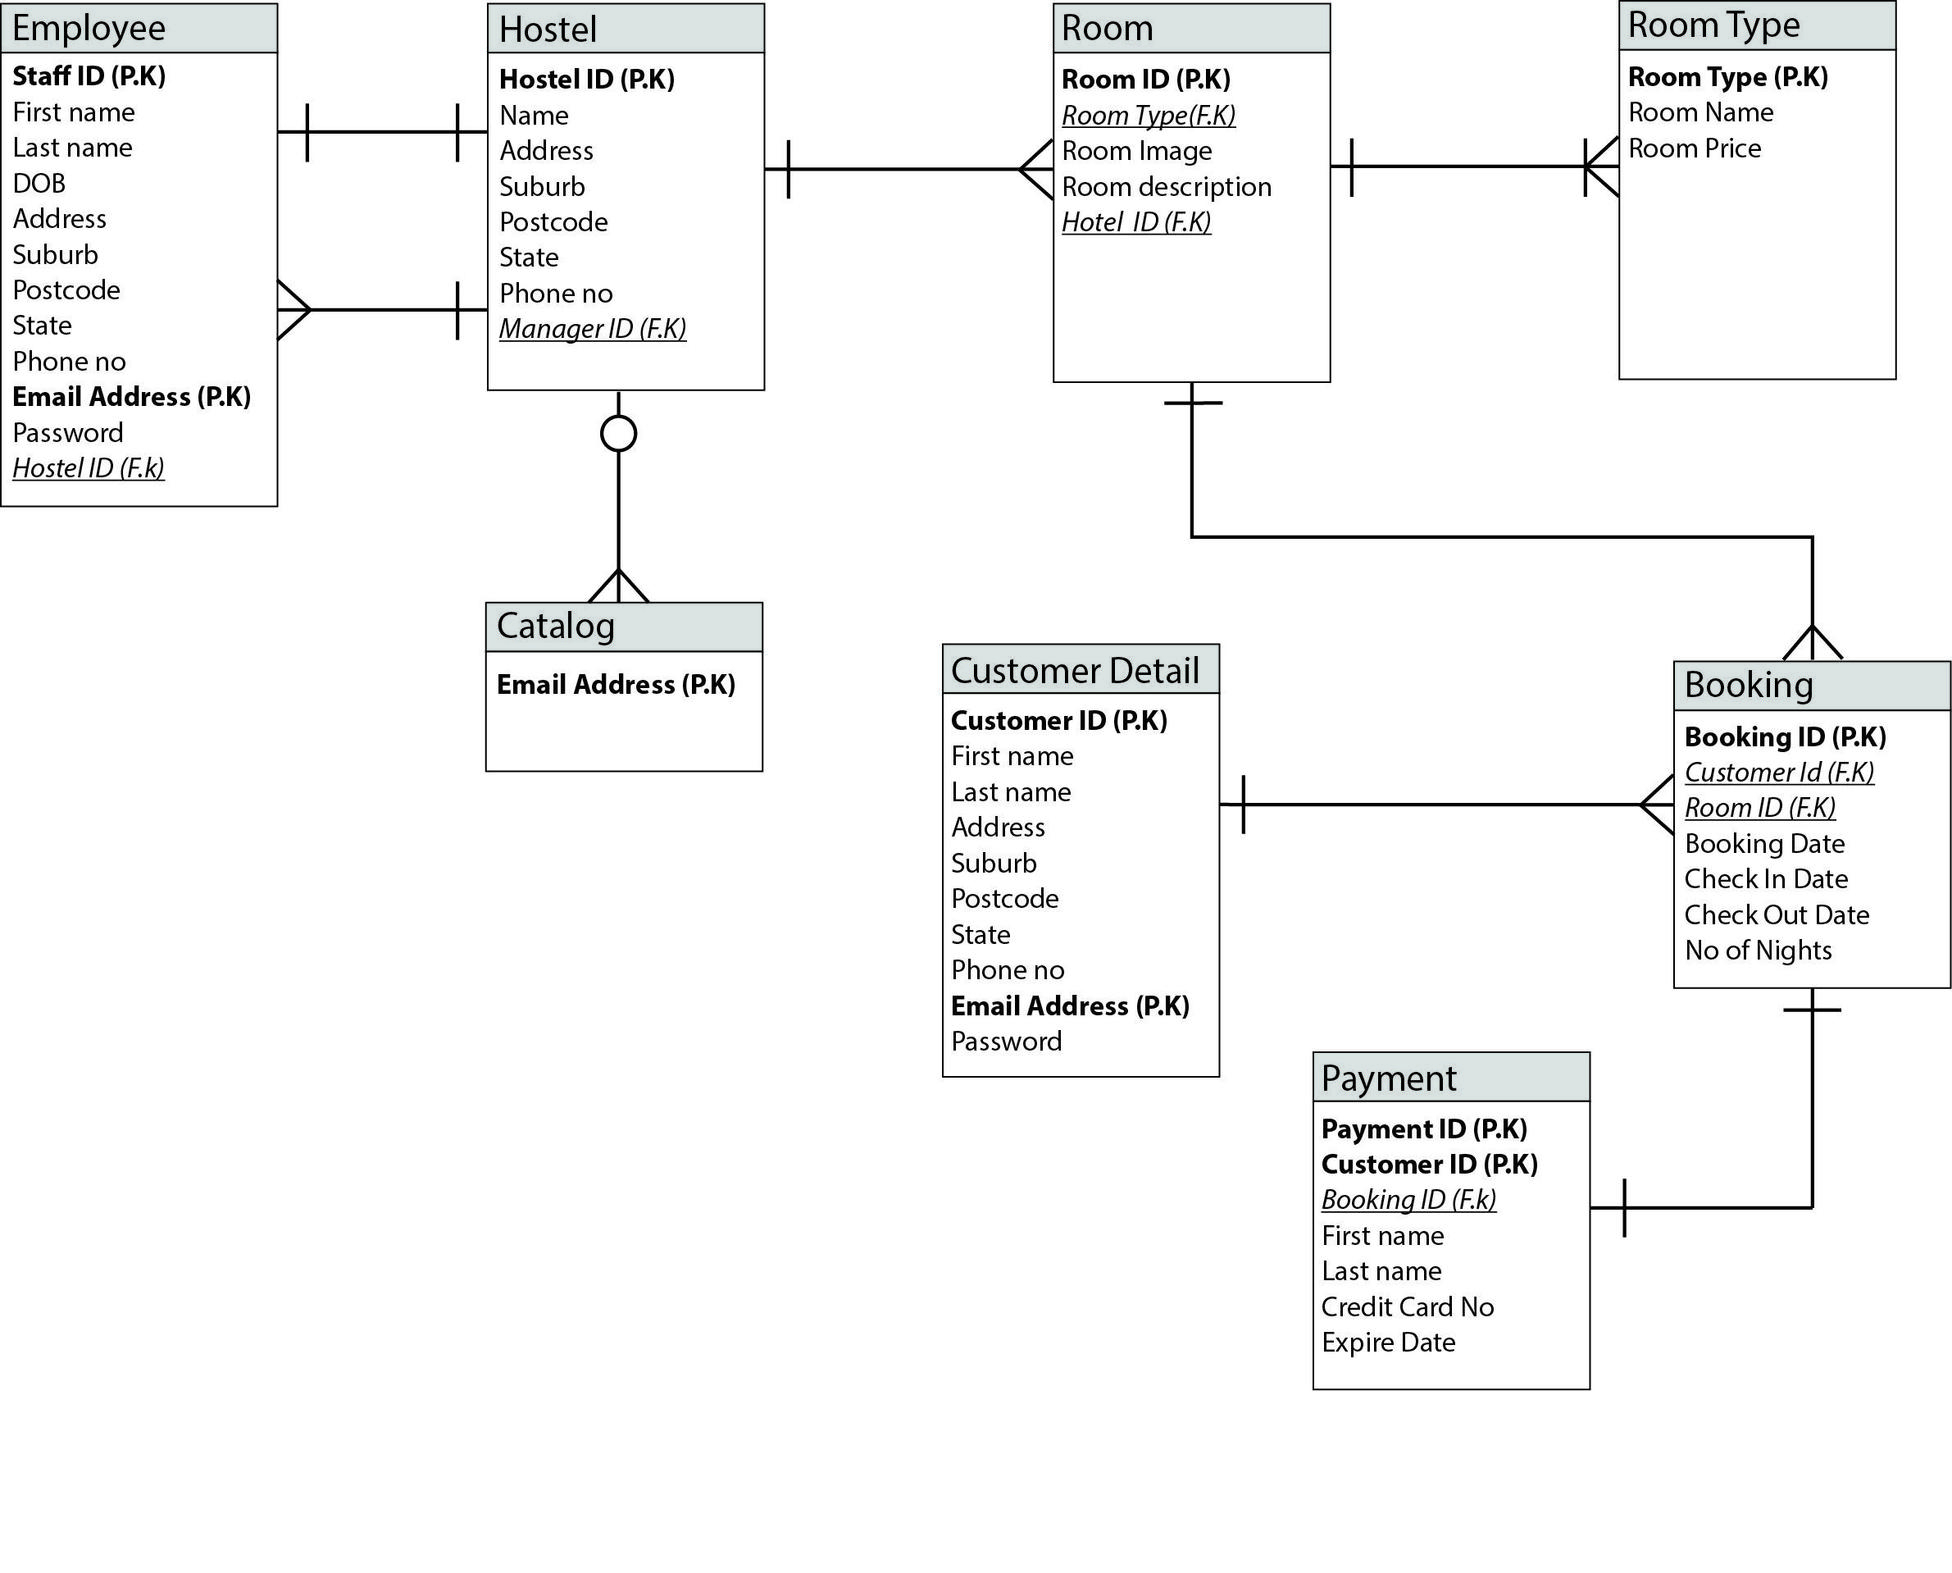 Mysql - Online Hostel Management System Er Diagram - Database regarding Er Diagram Examples With Questions